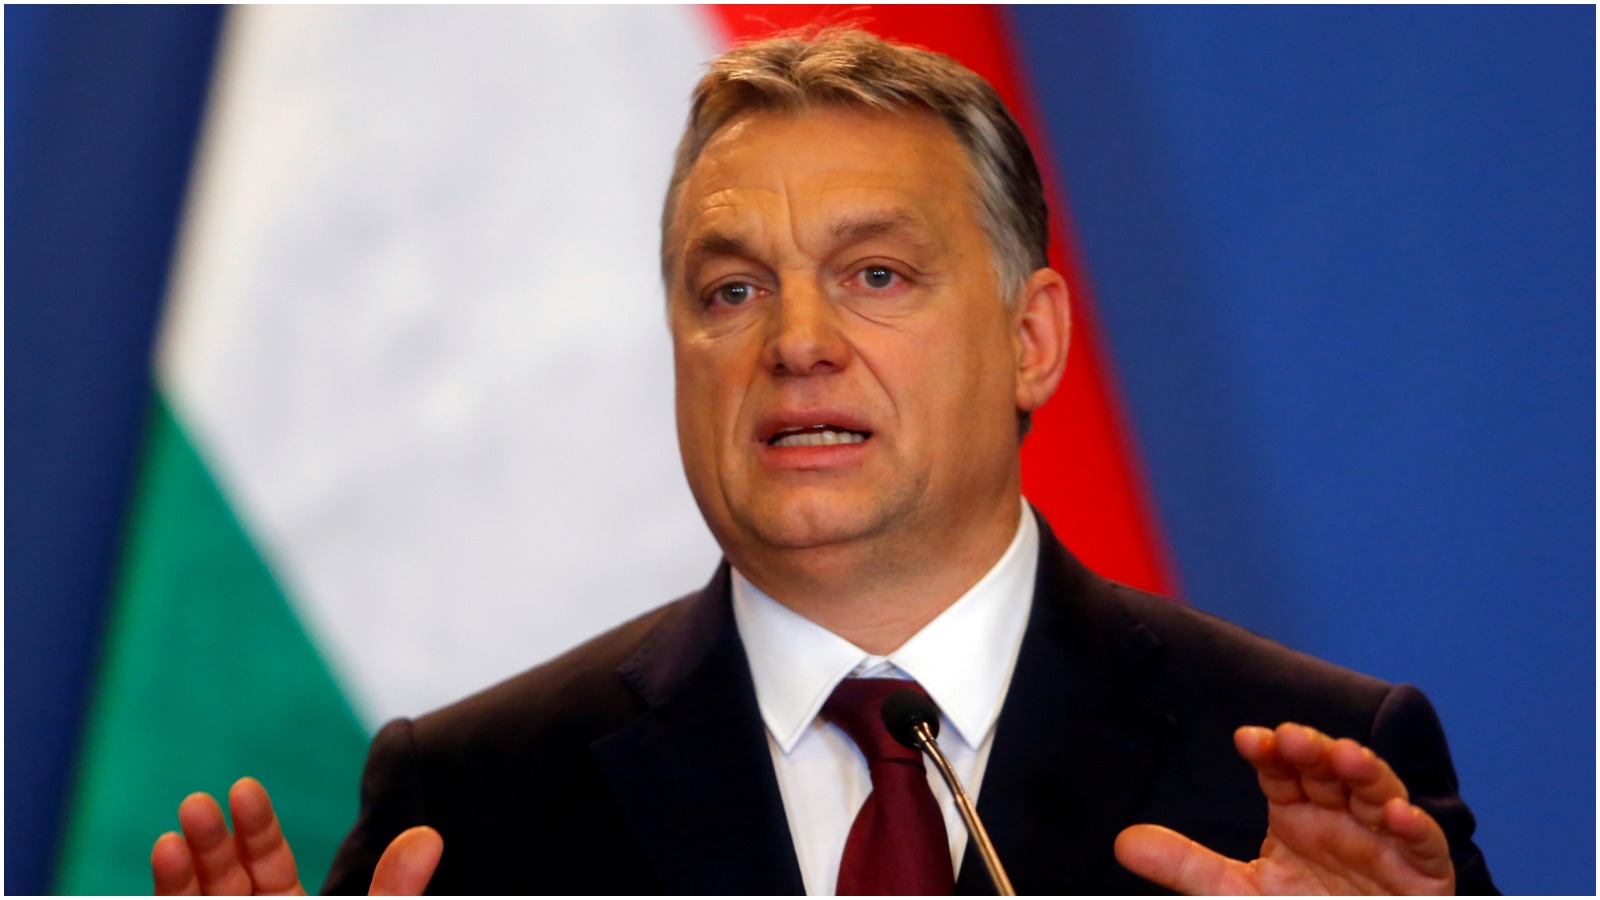 Filip Steffensen: Orbáns illiberale verdensorden undergraver demokratiet